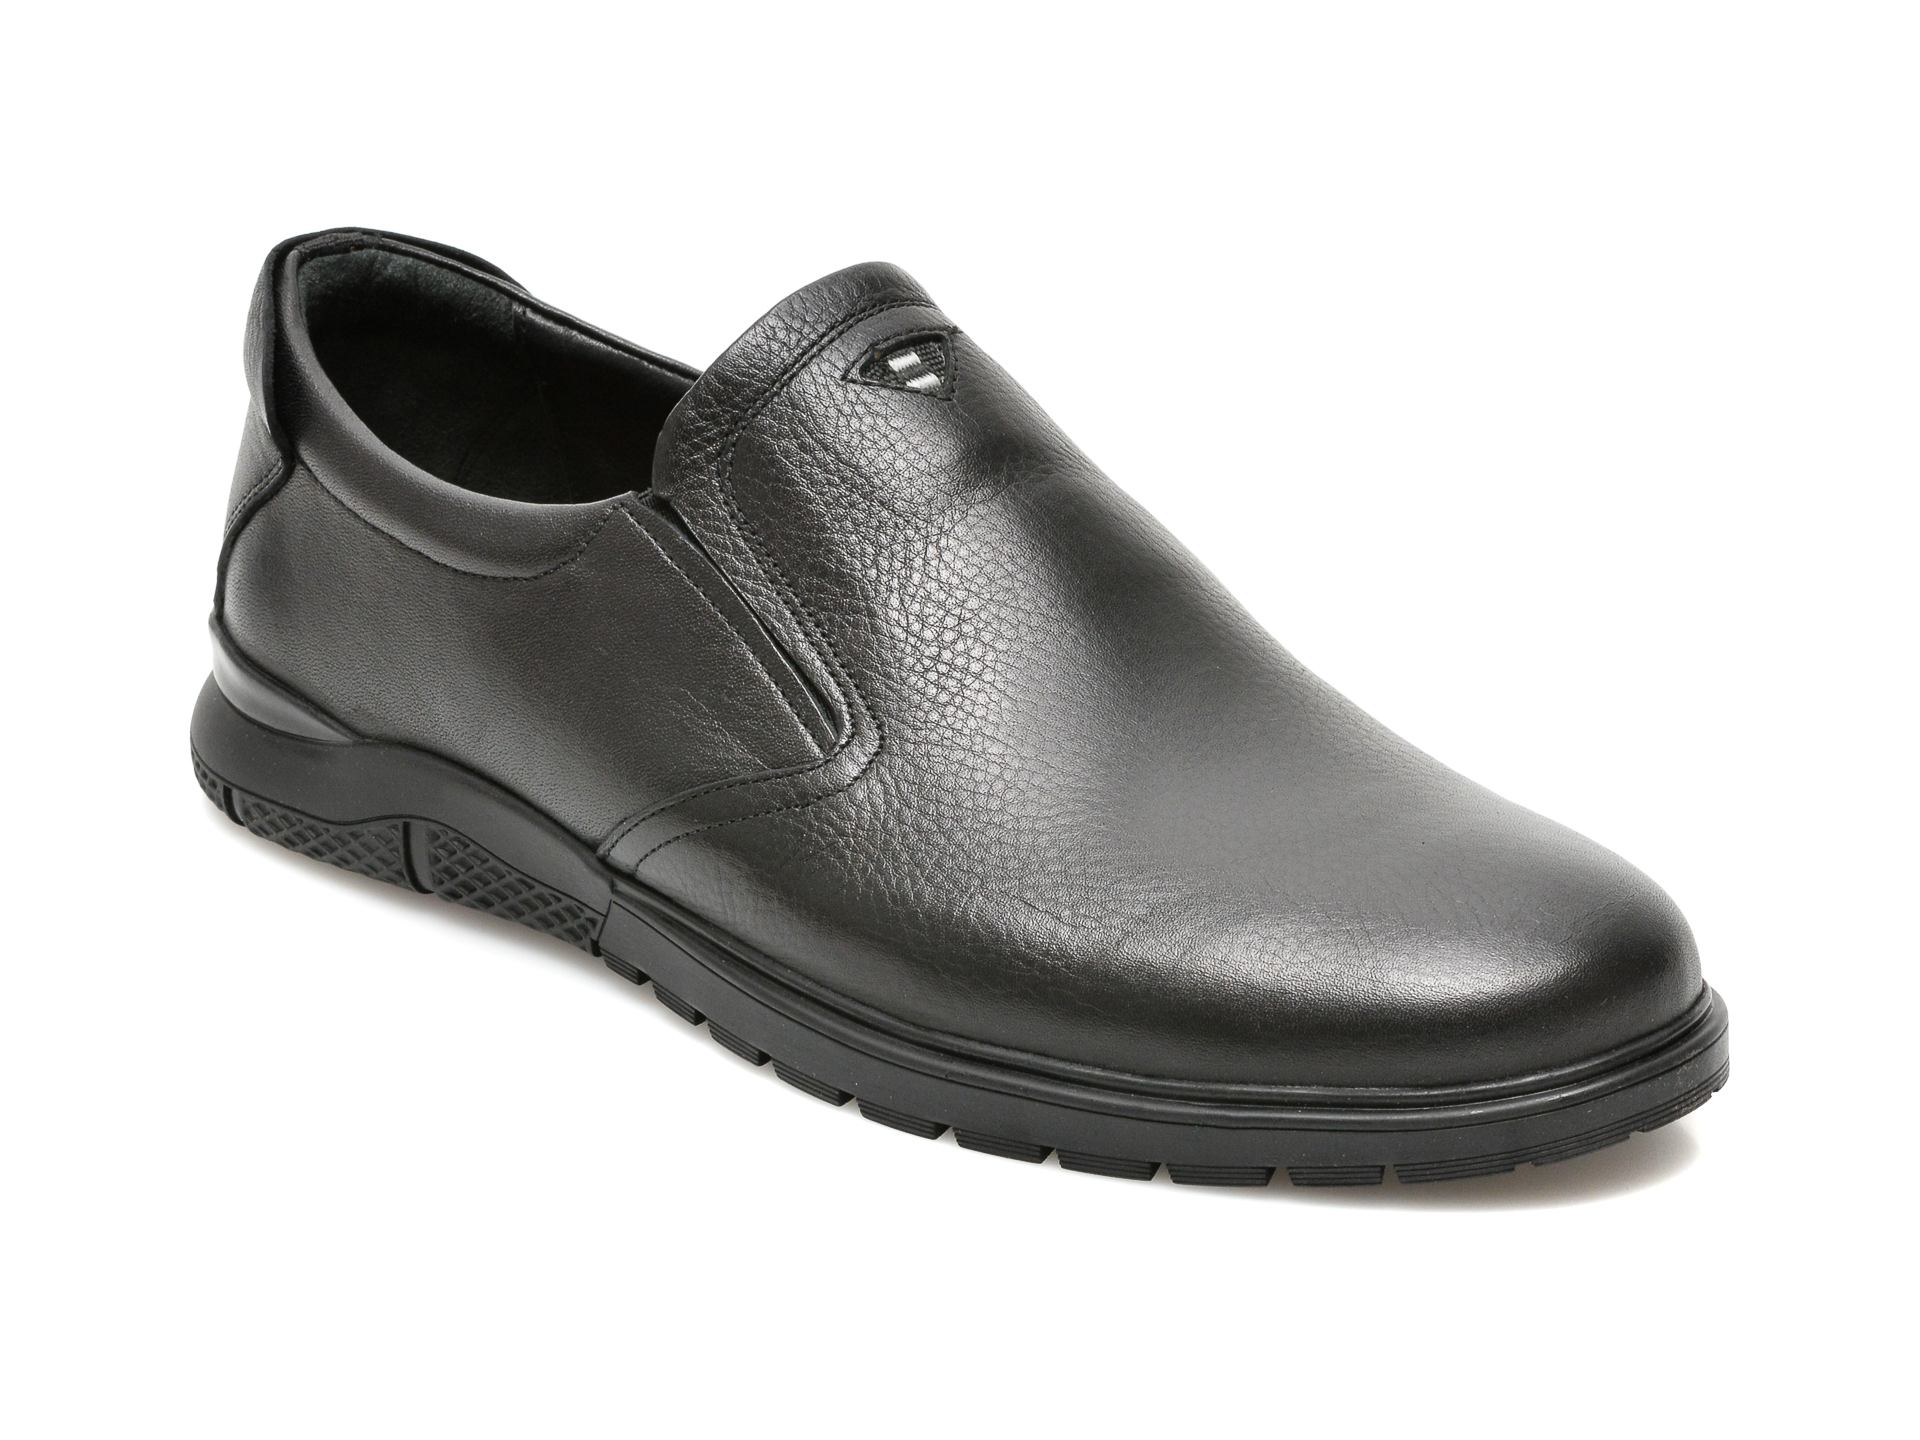 Pantofi OTTER negri, 556, din piele naturala Otter poza reduceri 2021